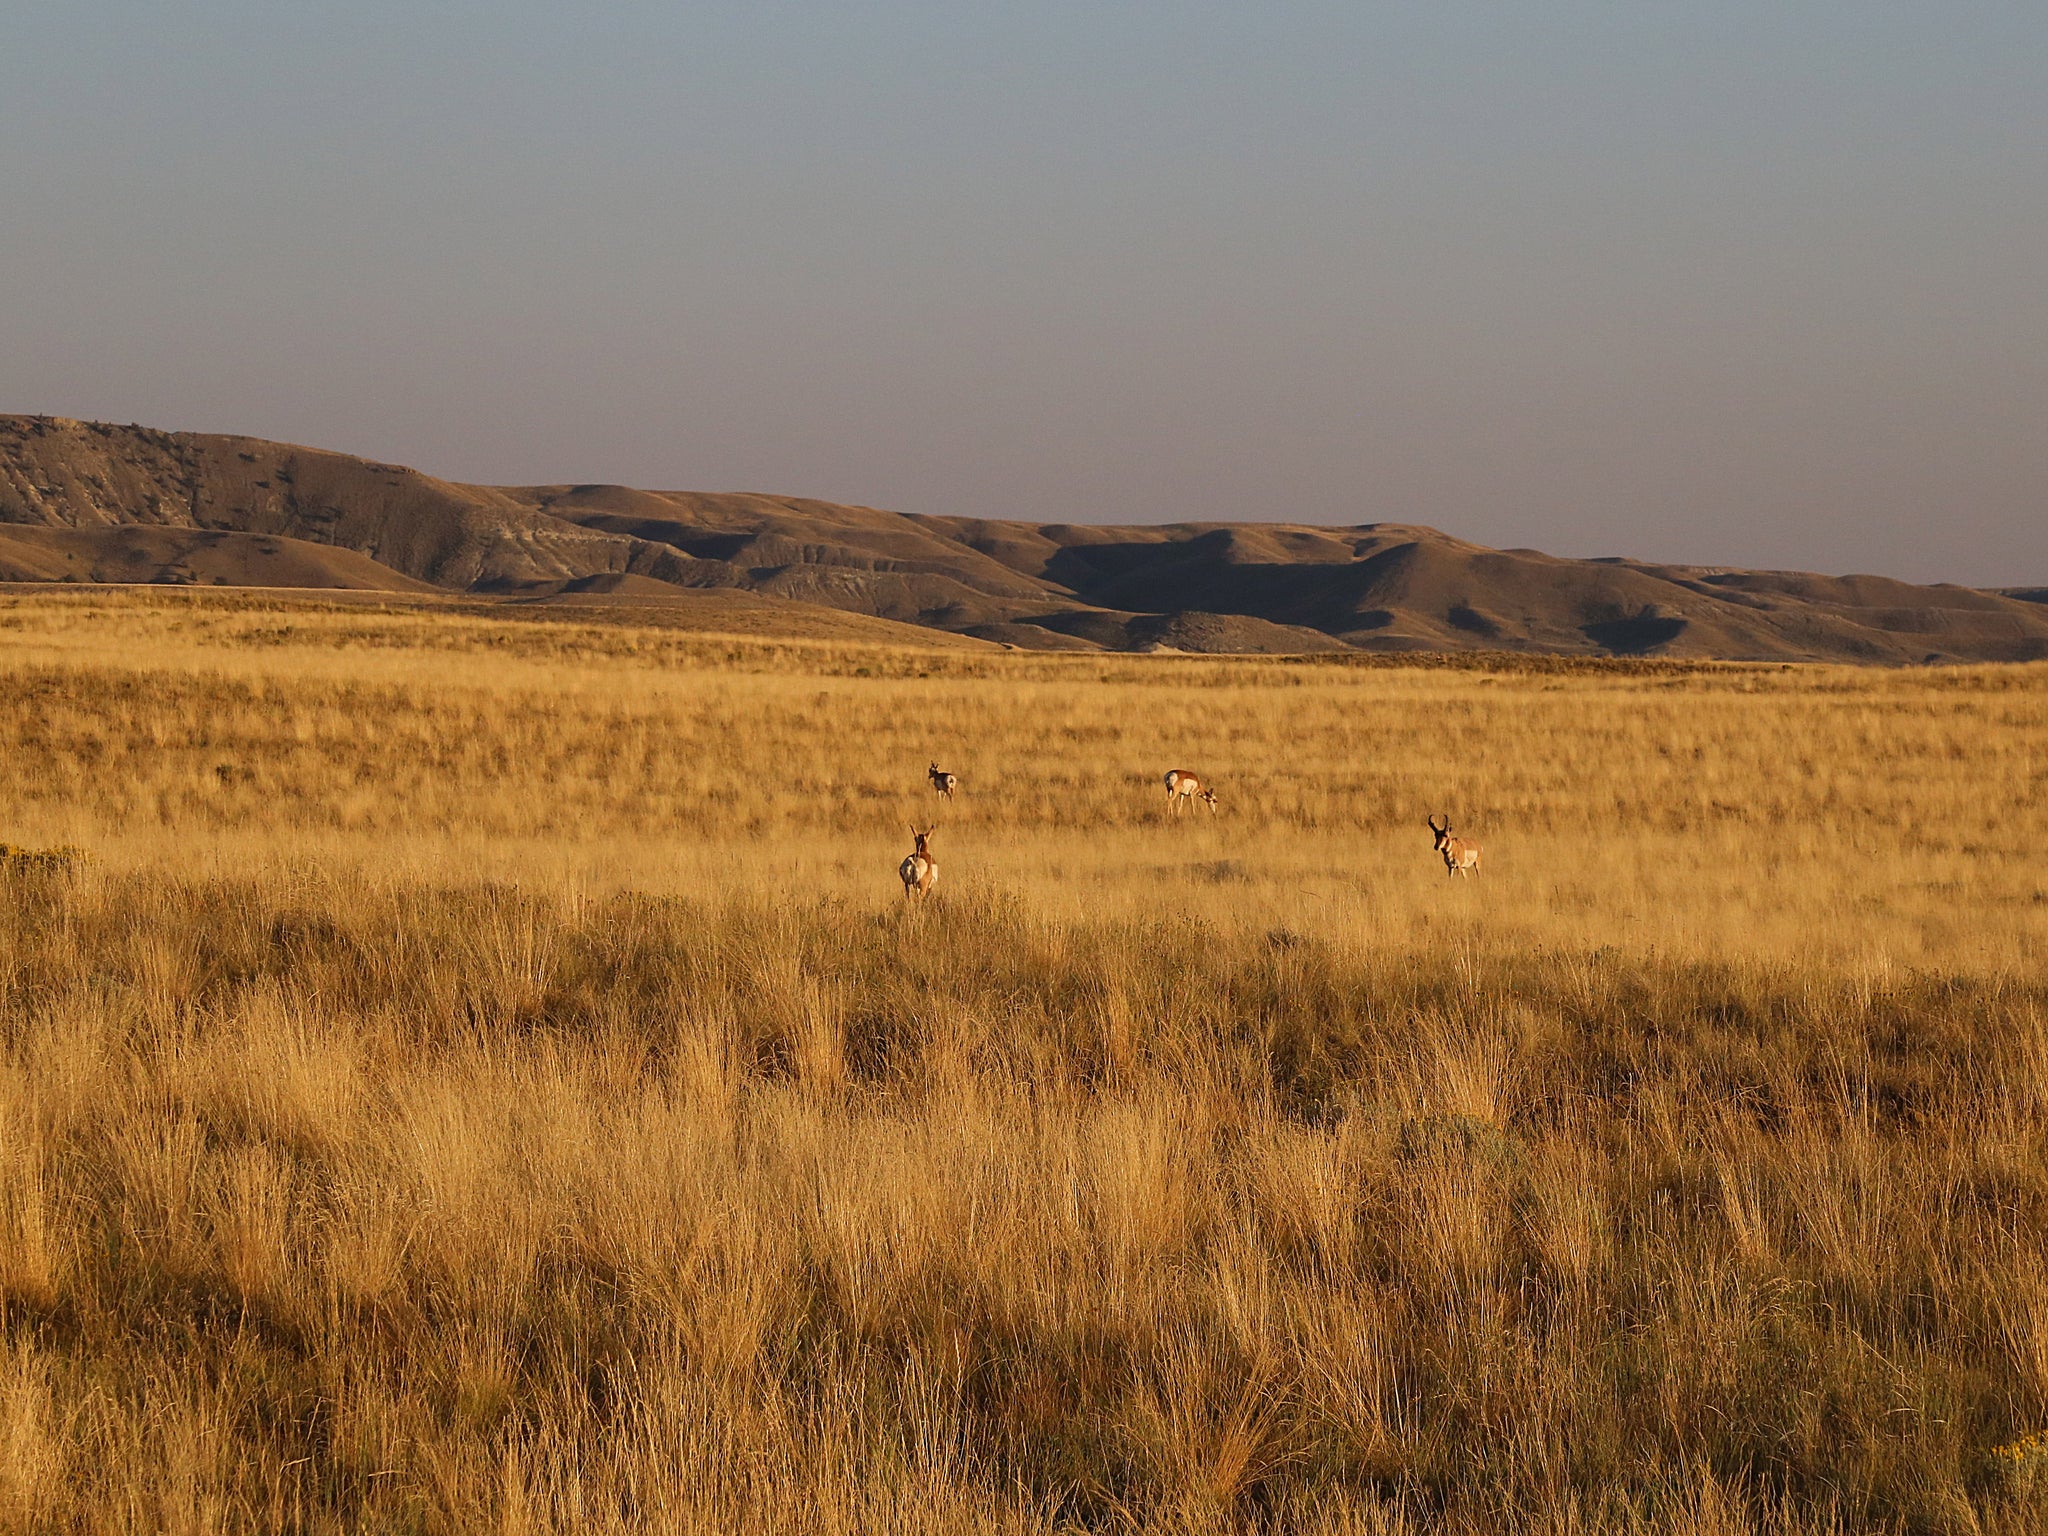 wyoming antelope hunting